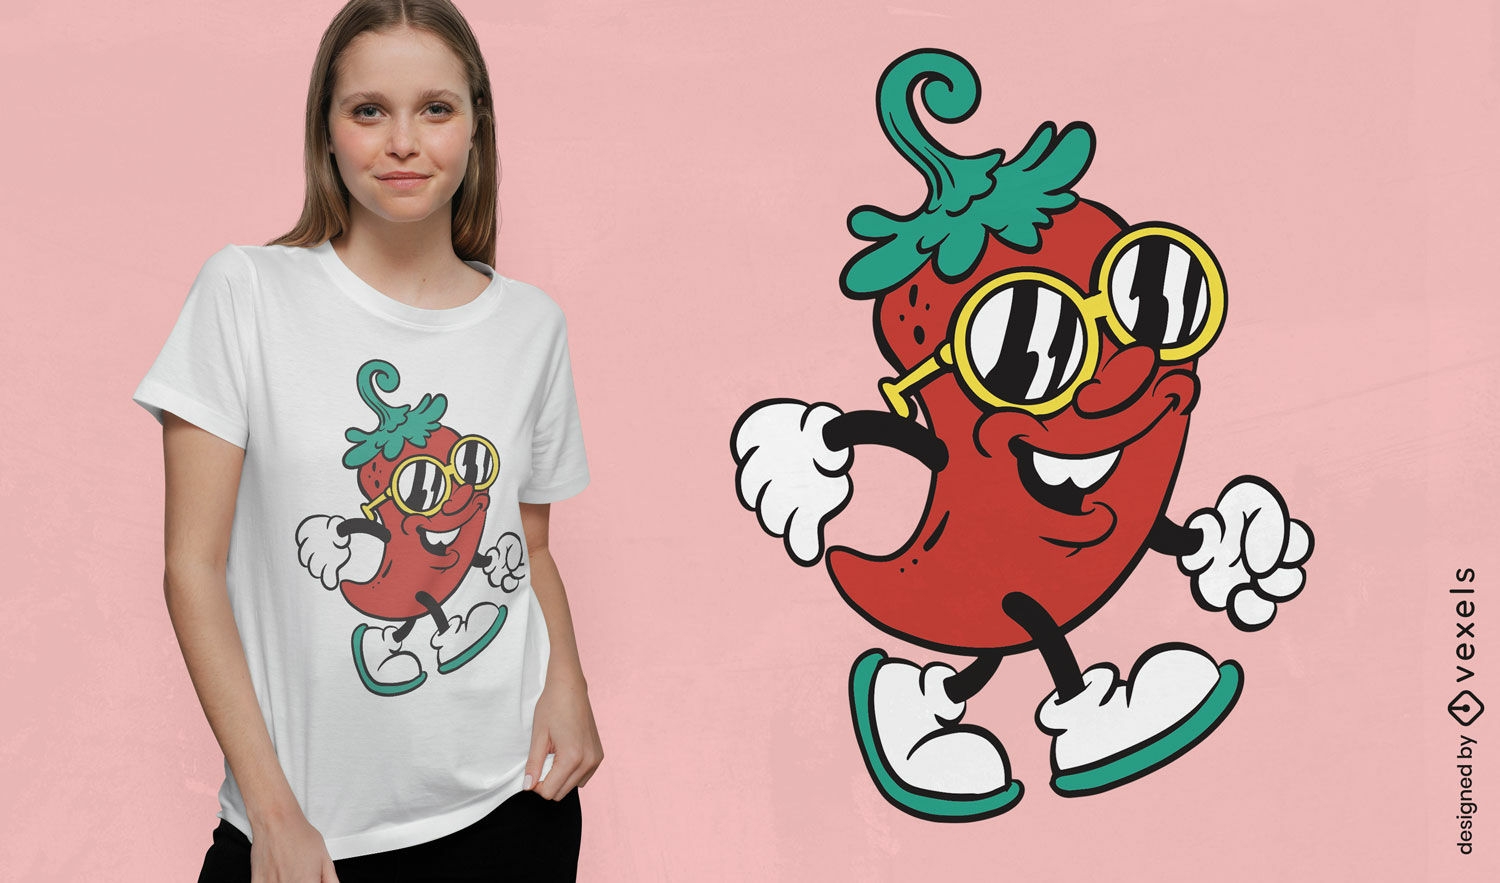 Cartoon red chilli pepper t-shirt design